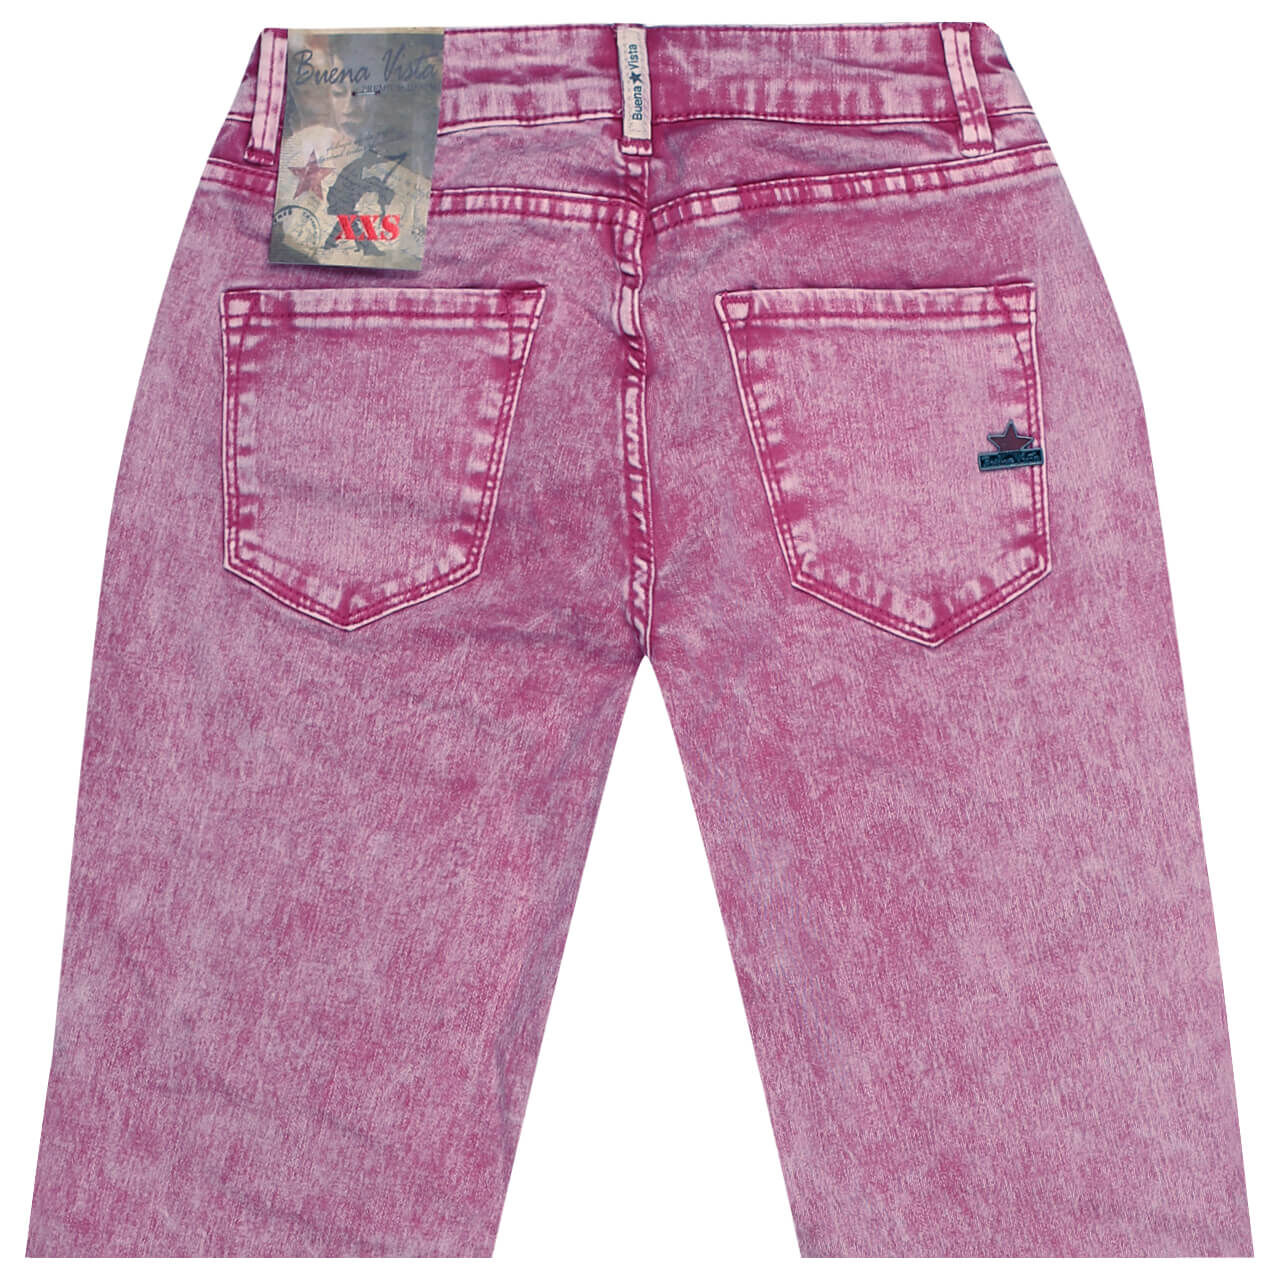 Buena Vista Italy V 7/8 Stretch Twill Baumwollhose für Damen in Pink, FarbNr.: 5076